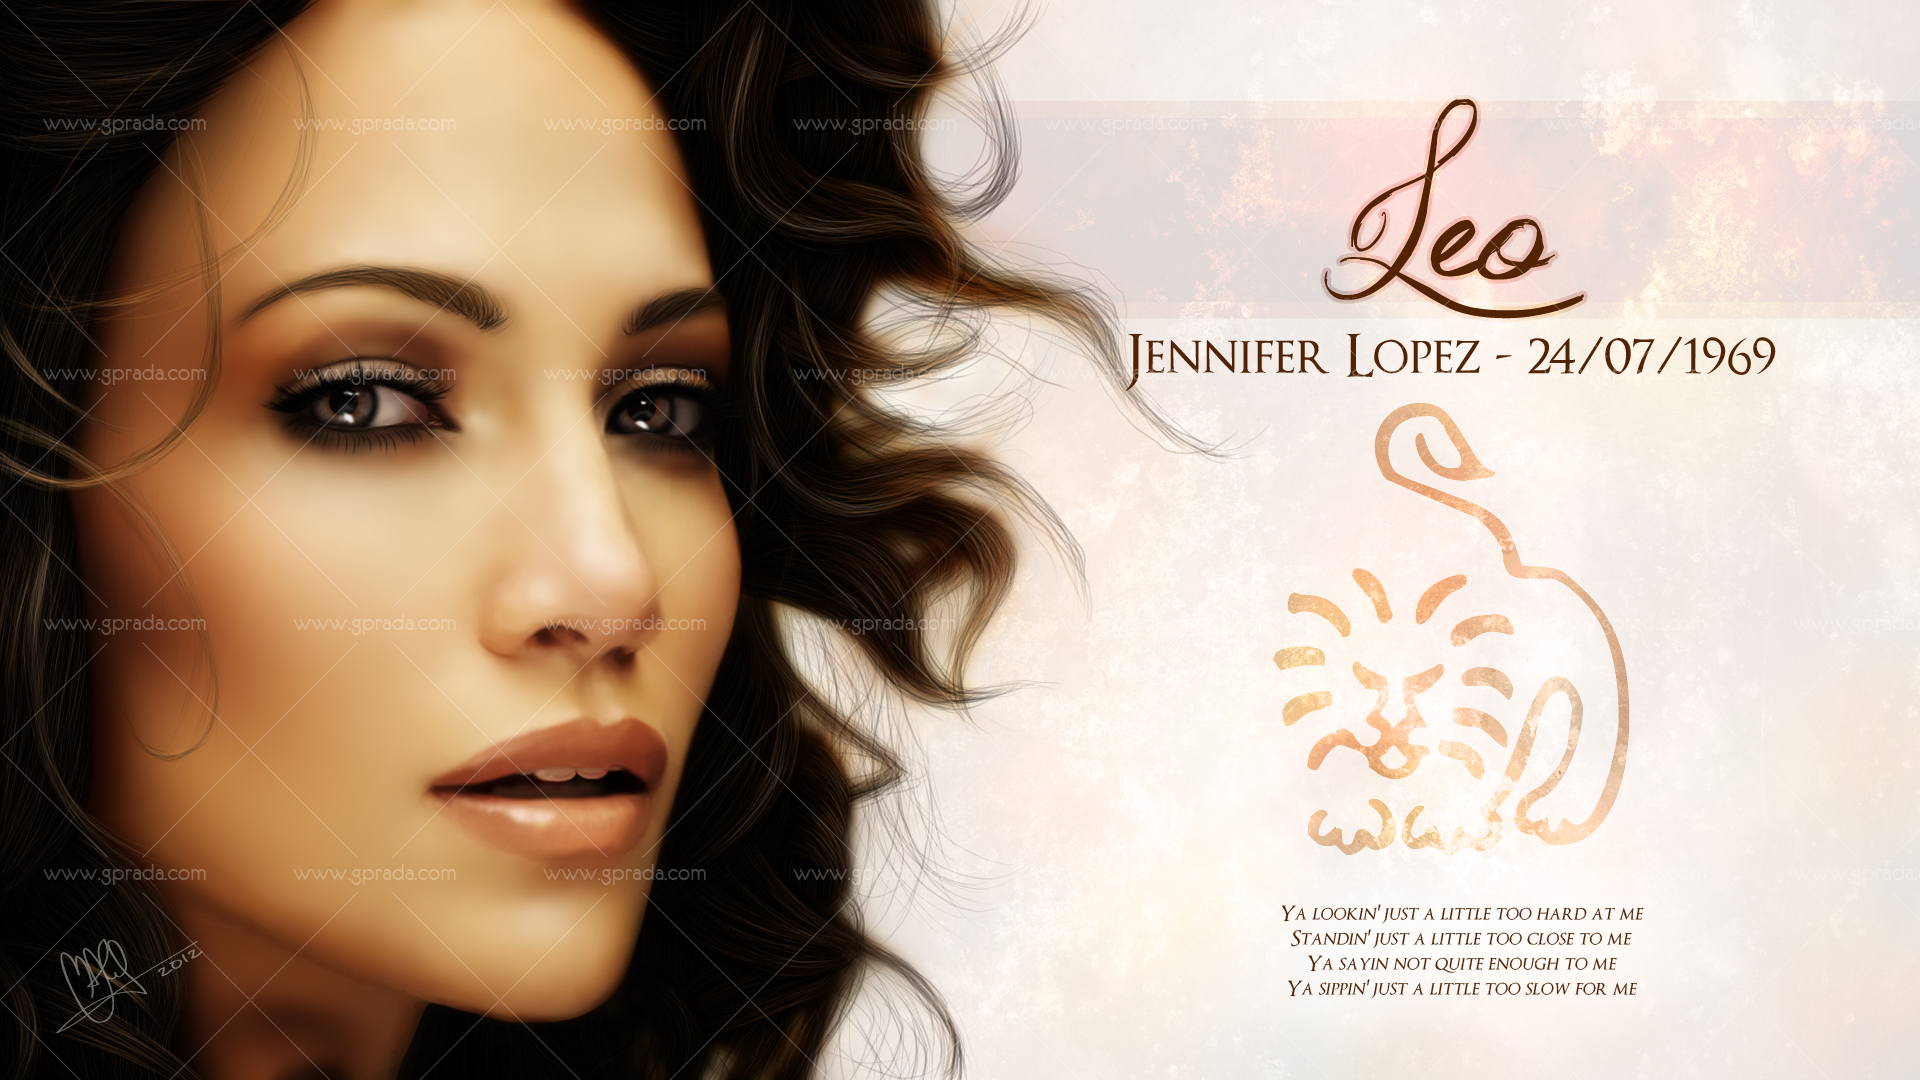 <b>Leo - Jennifer</b> Lopez by maneita <b>Leo - Jennifer</b> Lopez by maneita - leo___jennifer_lopez_by_maneita-d4ruvse